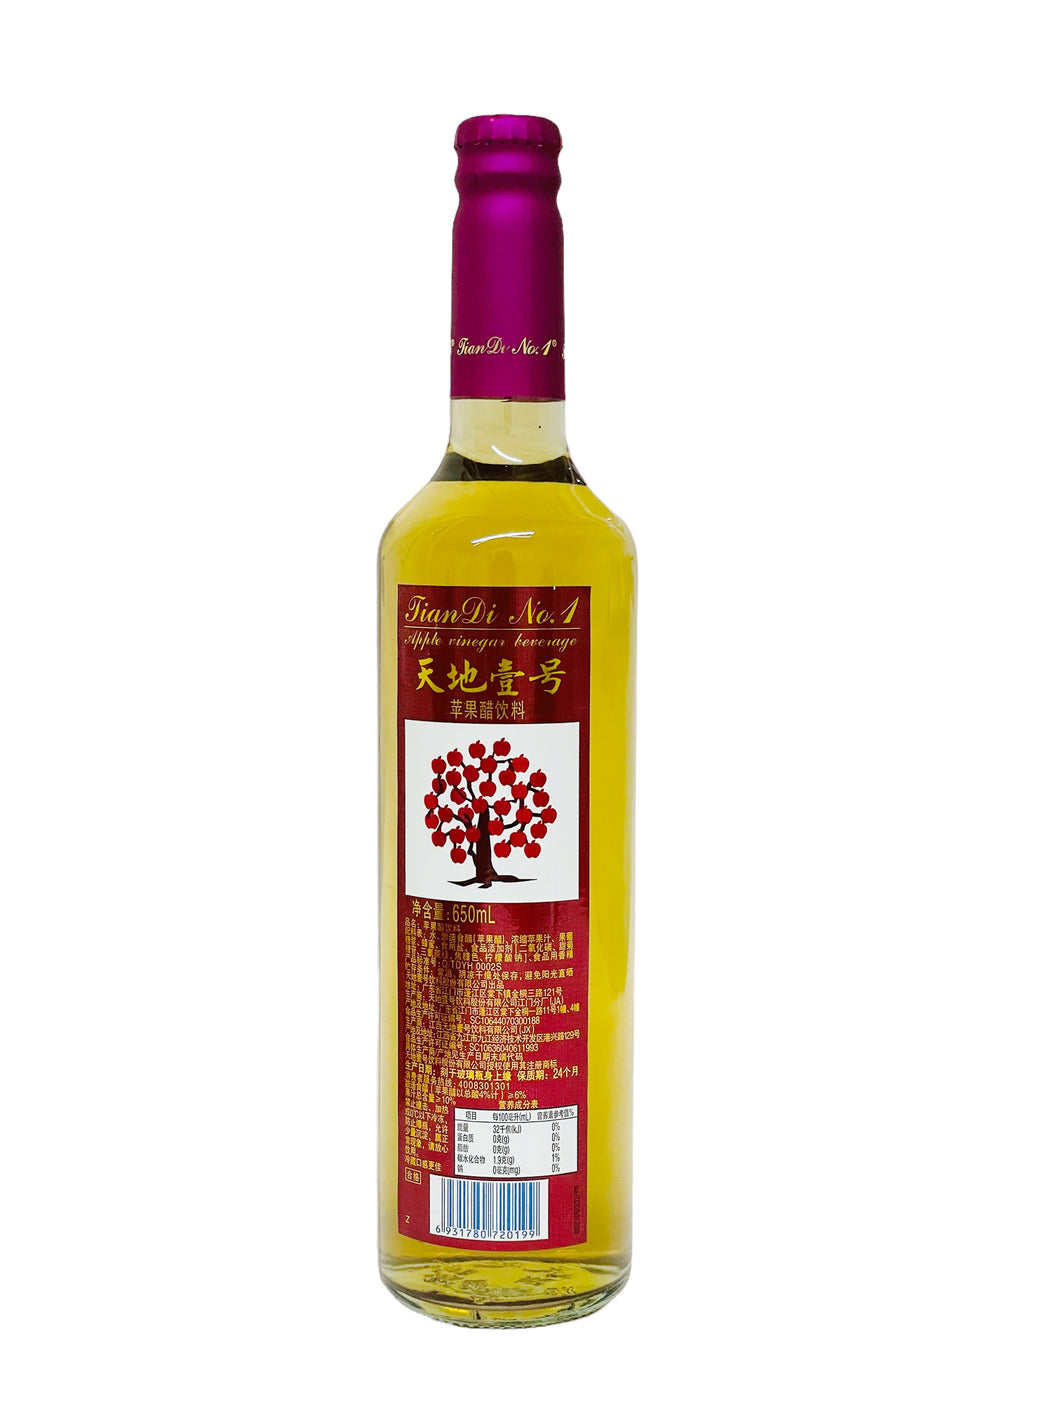 TDYH Cider Vinegar 650ml 天地一号(苹果醋)